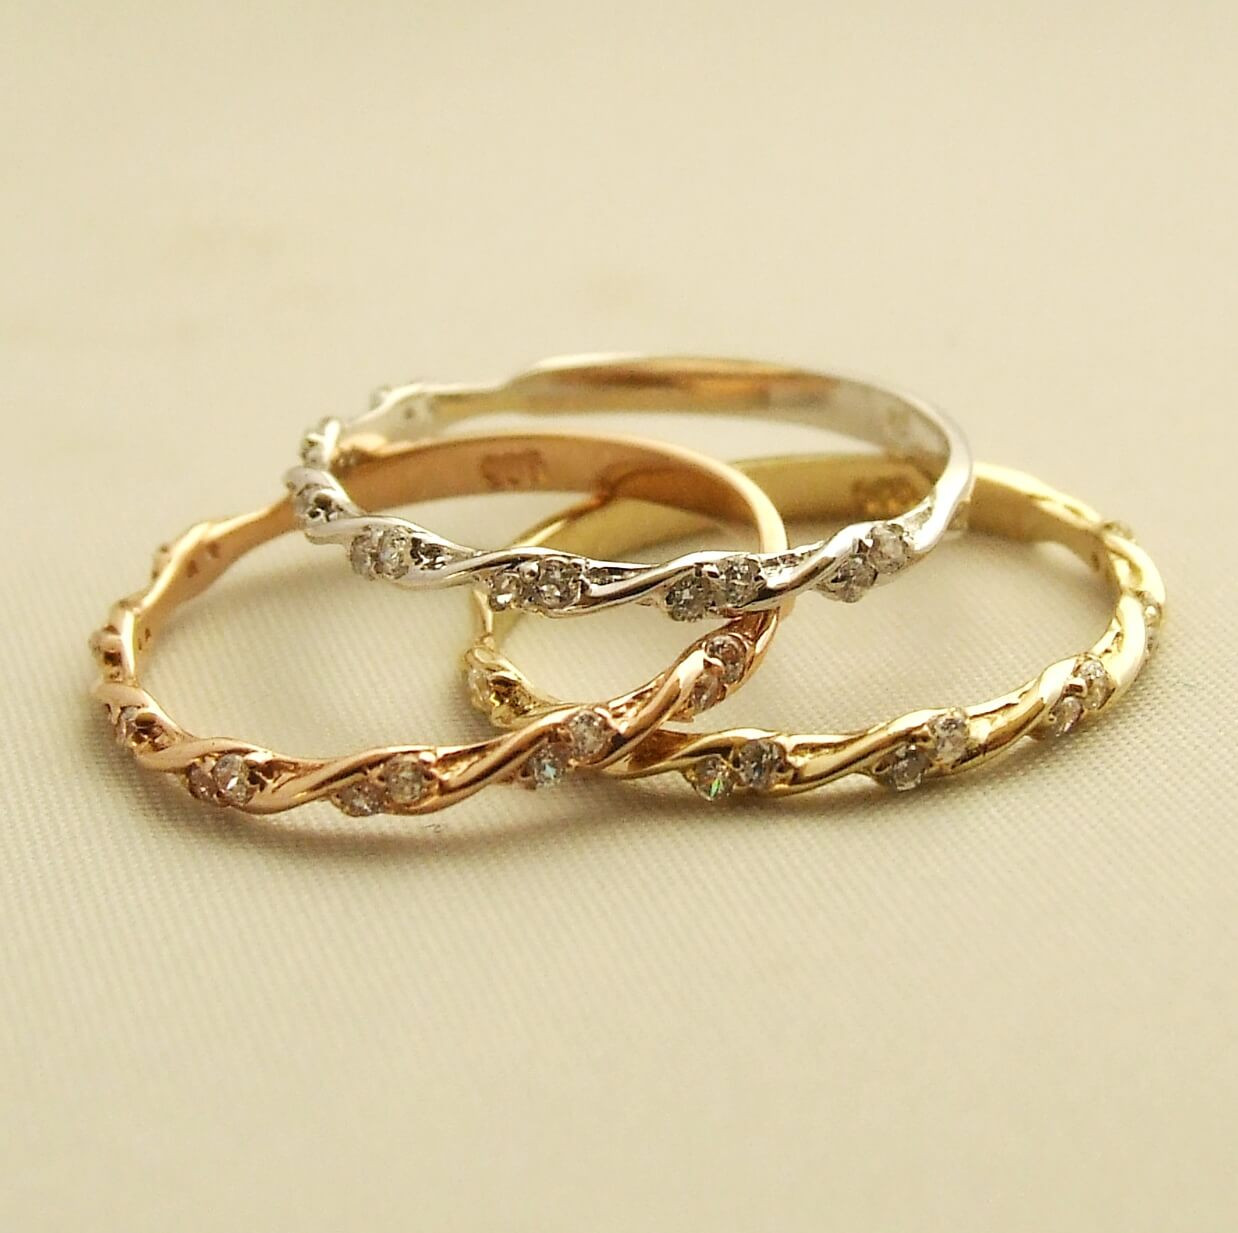 Afbeelding van Christian Gouden ringen set met zirkonia